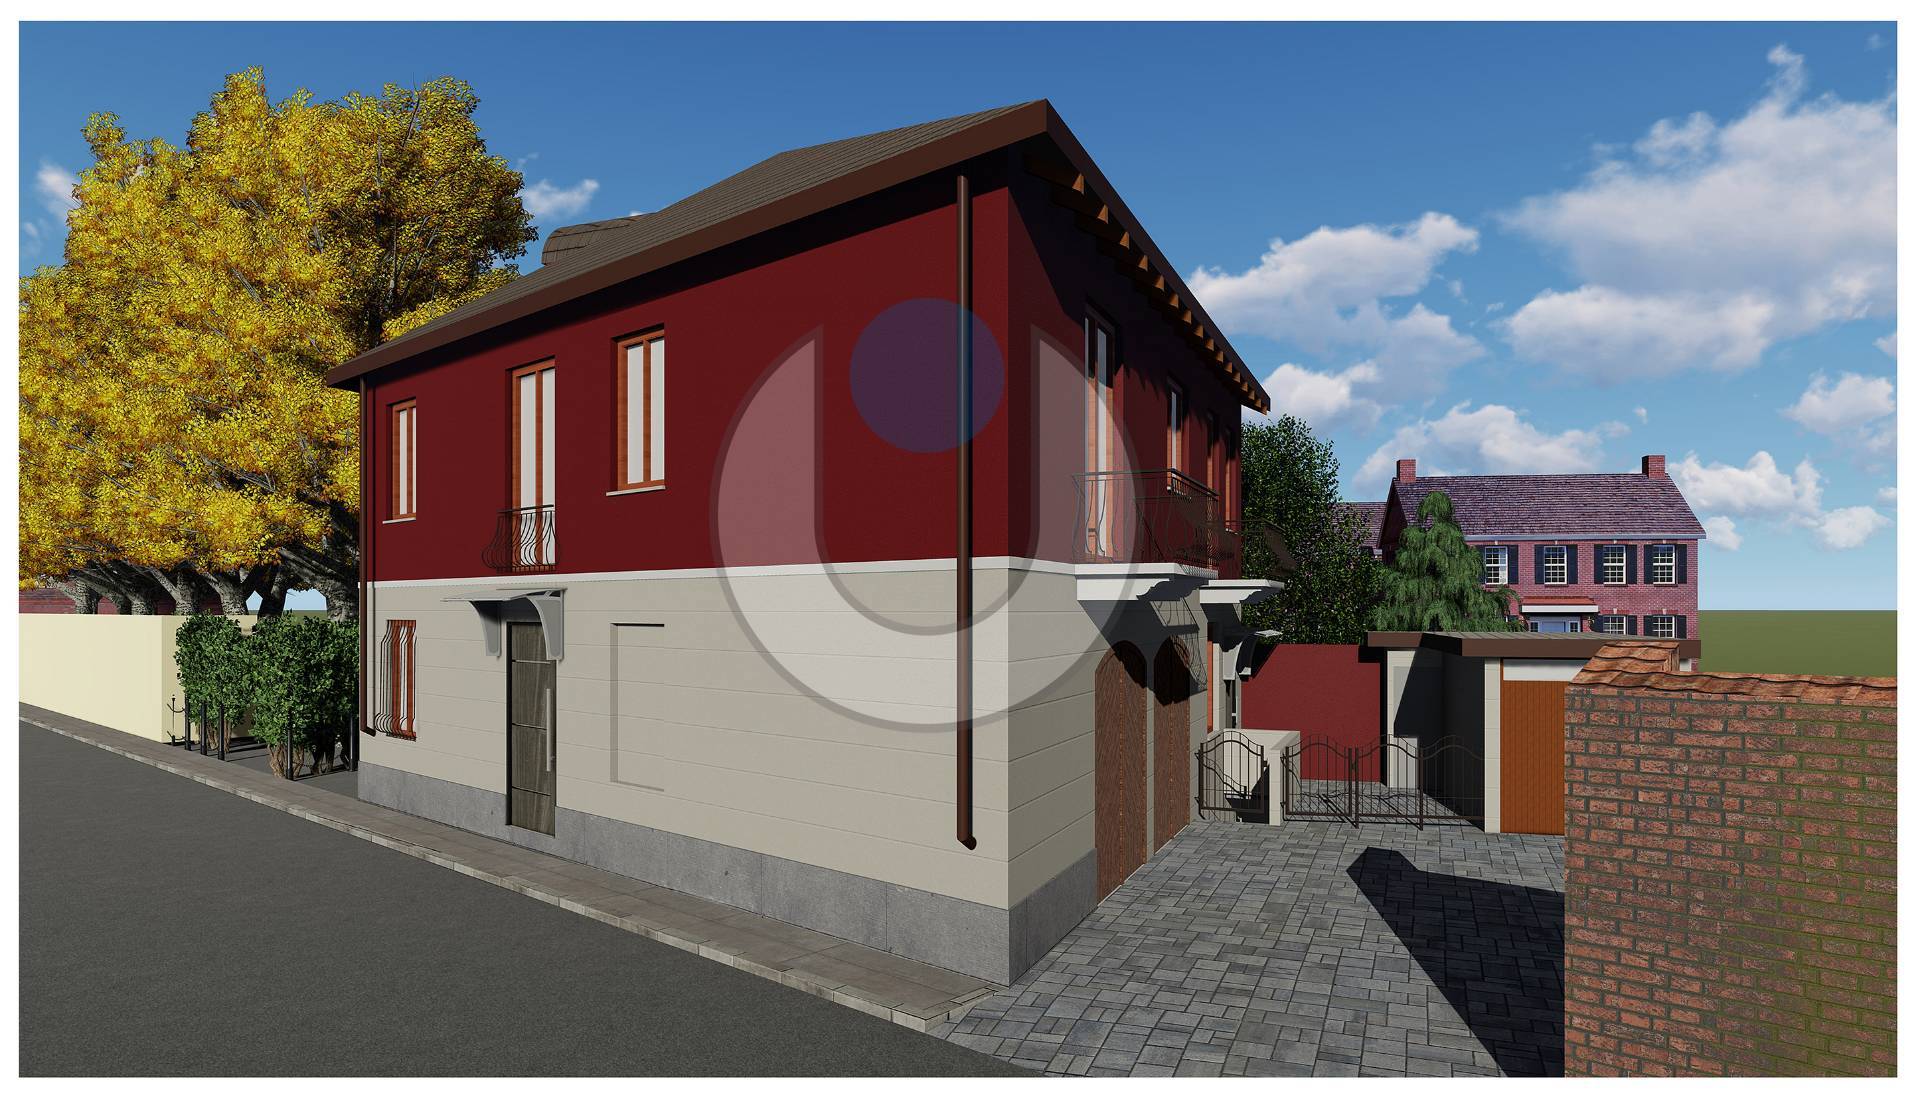 Villa in vendita a Santena, 14 locali, zona Località: Centro, prezzo € 130.000 | PortaleAgenzieImmobiliari.it